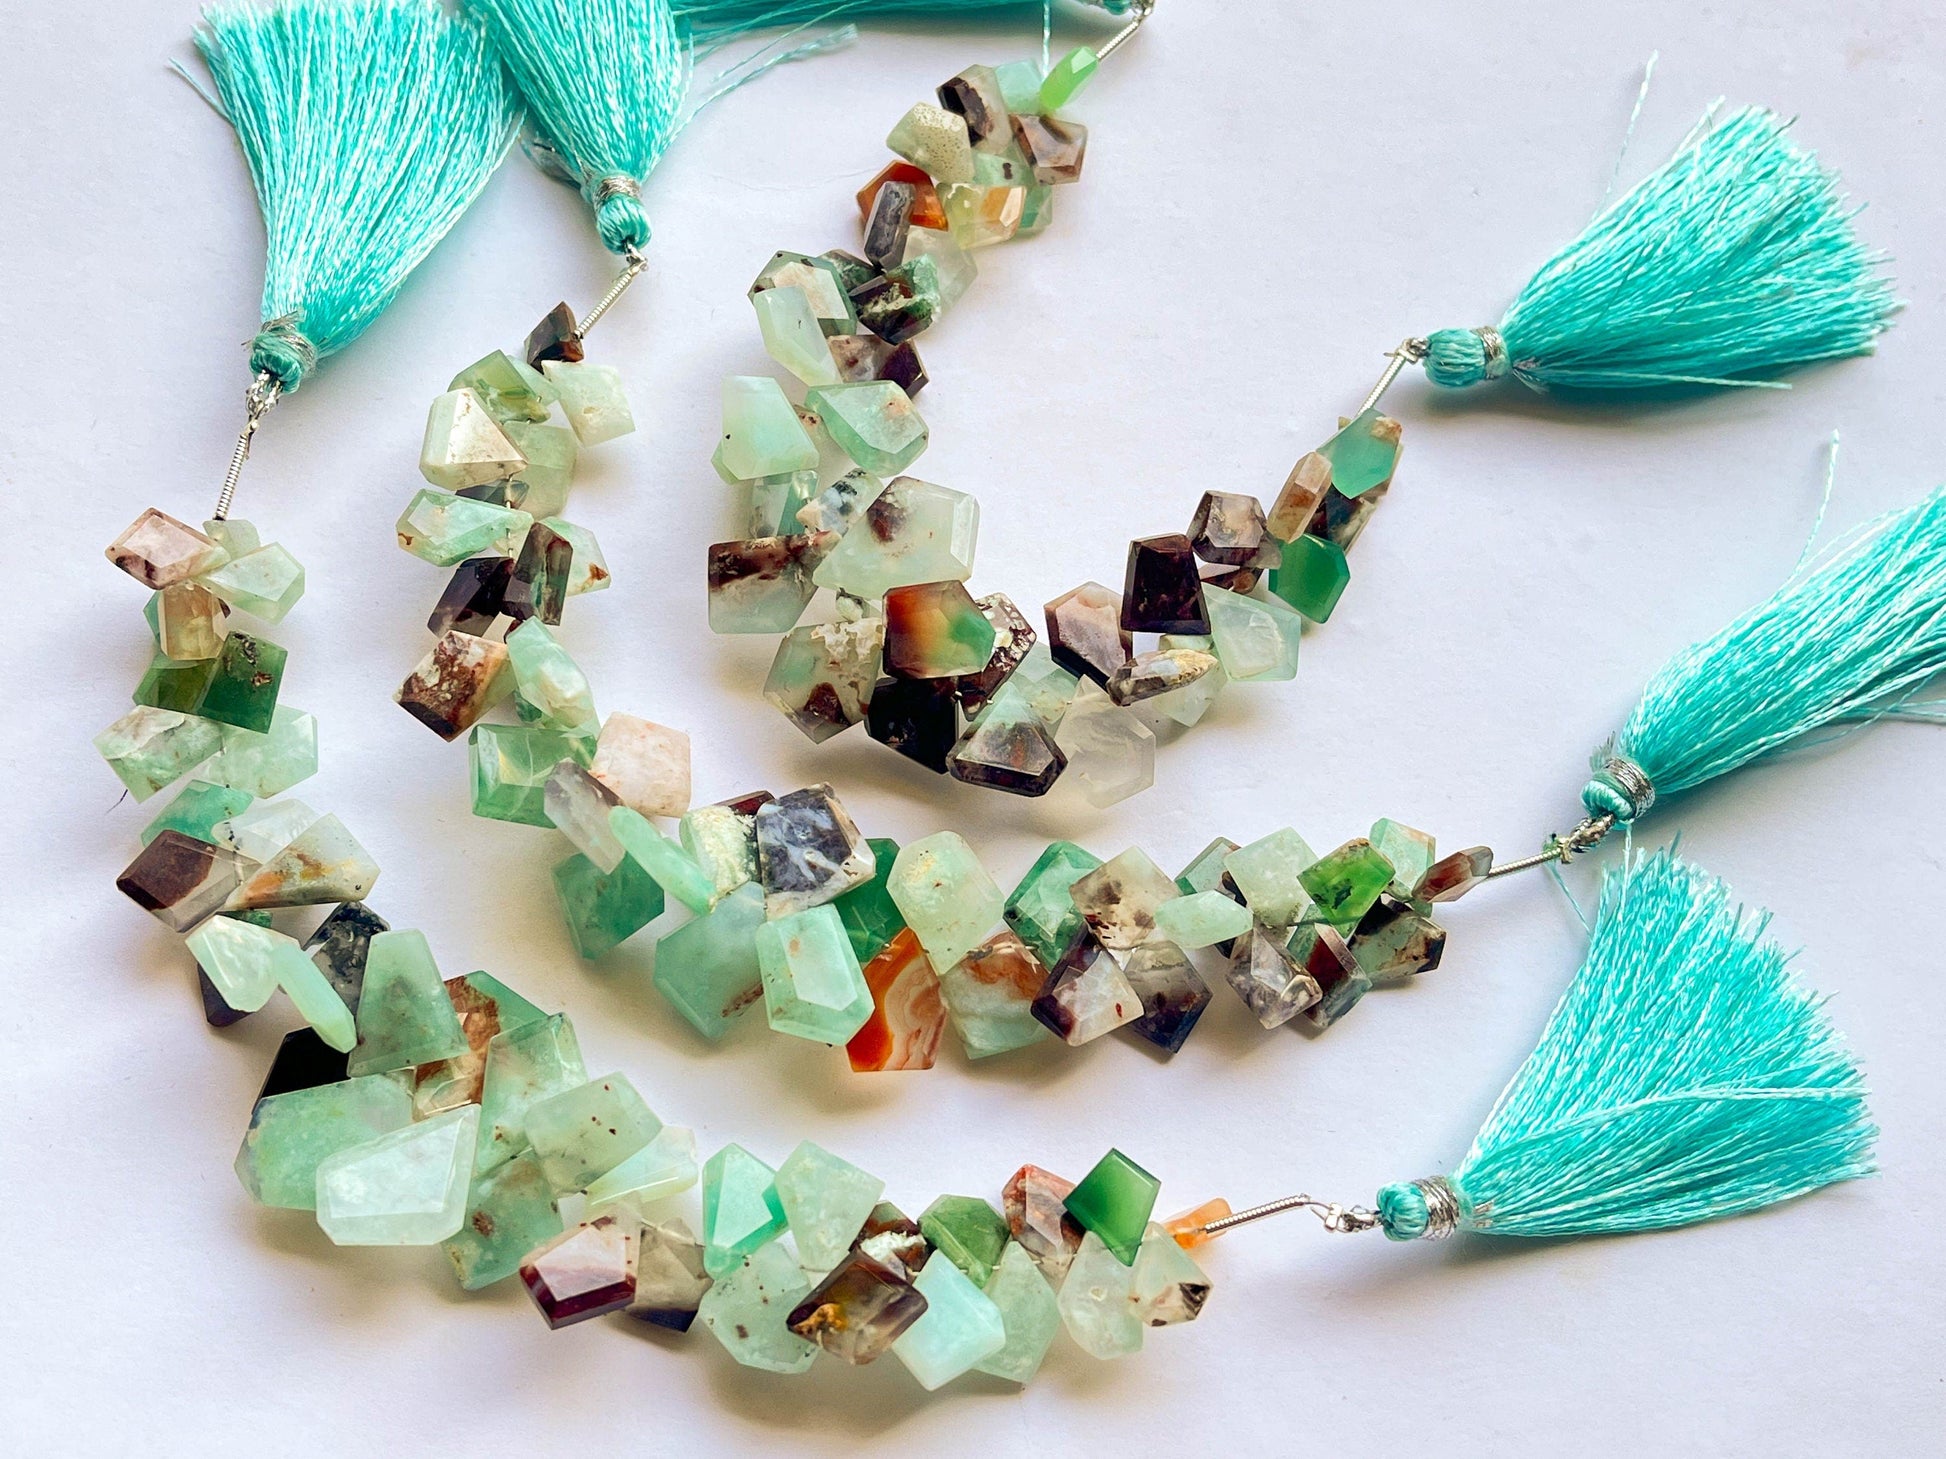 Natural Aquaprase Slice Shape Briolette Beads, Natural Gemstone, Aquaprase Beads, High Quality Aquaprase Gemstone Beads, 6 inch String Beadsforyourjewelry